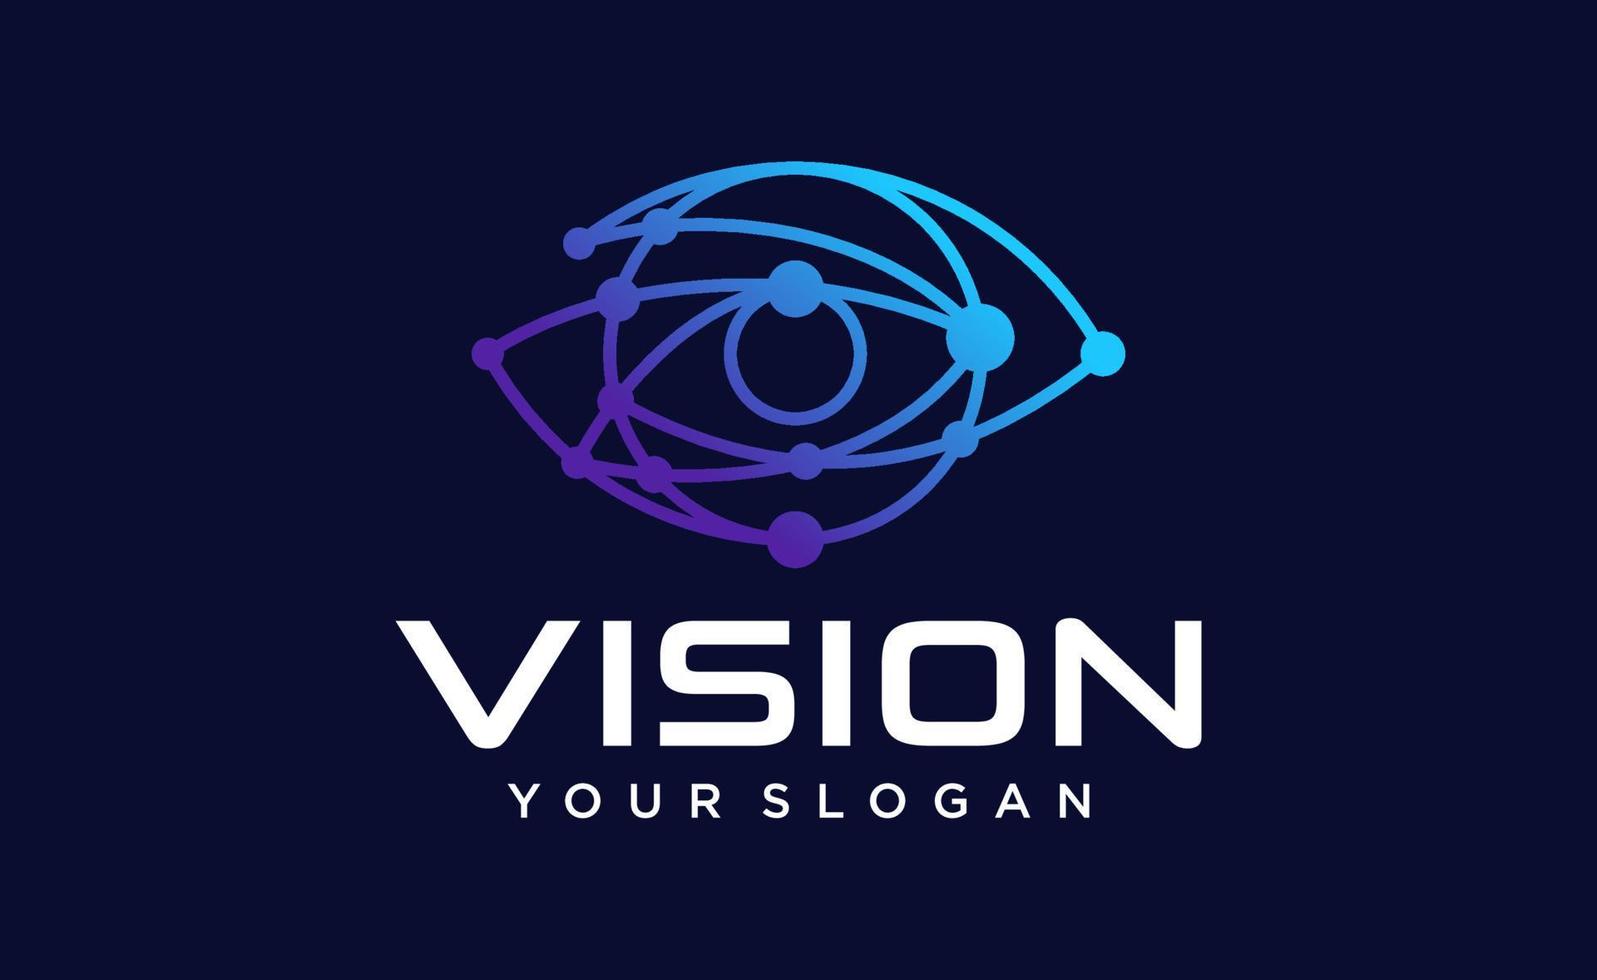 modello vettoriale di progettazione del logo dell'occhio. icona multimediale colorata. idea del concetto di logotipo di visione.